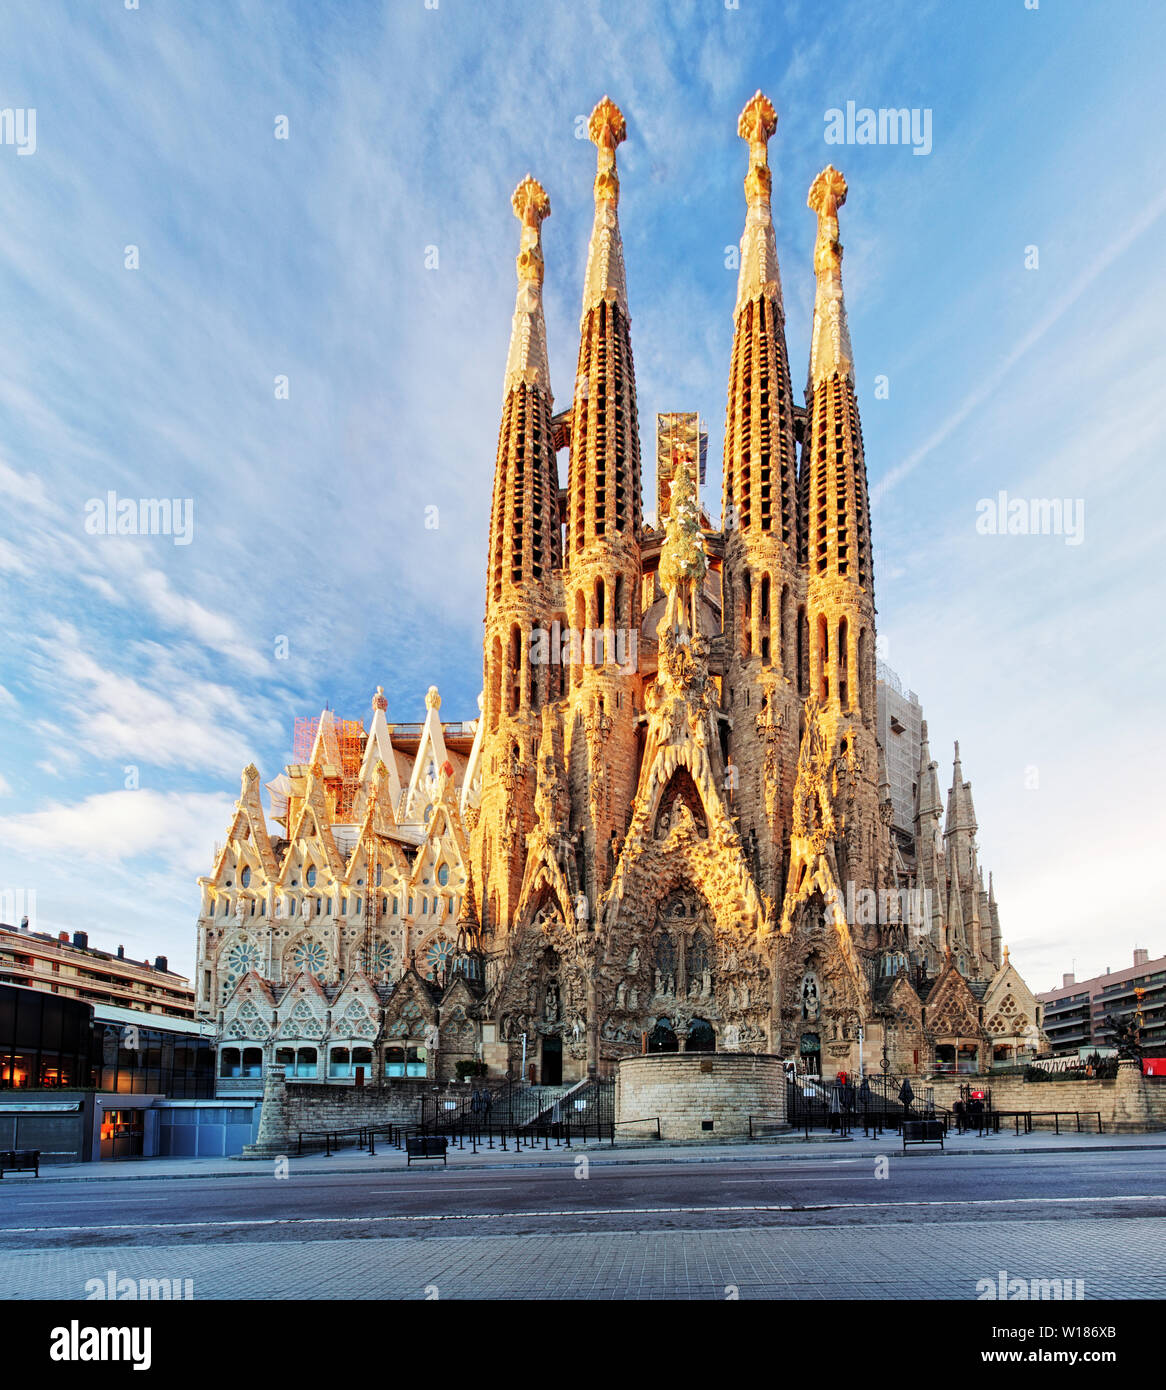 BARCELONA, SPANIEN - 10. Februar: La Sagrada Familia - die imposante Kathedrale von Gaudí, die der Bau ist seit dem 19. März 1882 und nicht f ausgelegt. Stockfoto